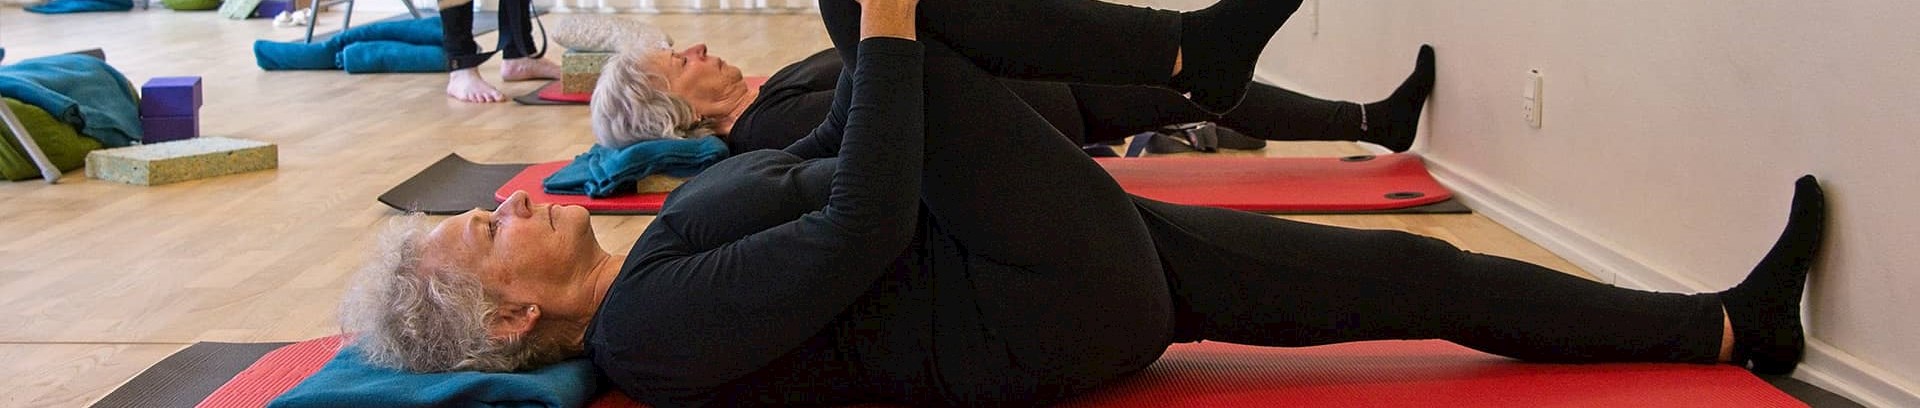 Hensyntagende yoga ved FOF Aarhus ved underviser Celia Mikkelsen